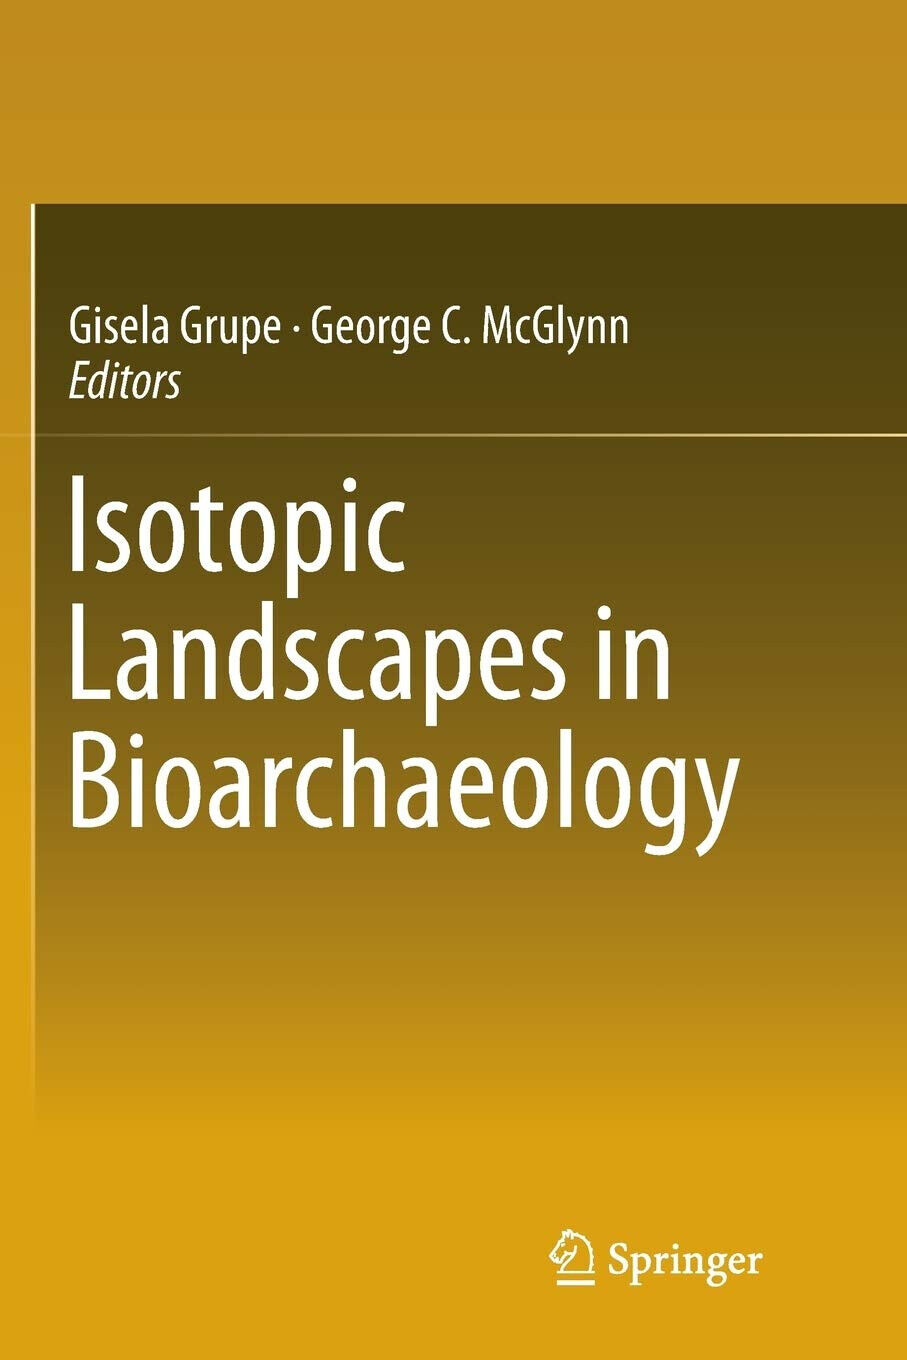 Isotopic Landscapes in Bioarchaeology - Gisela Grupe - Springer, 2018